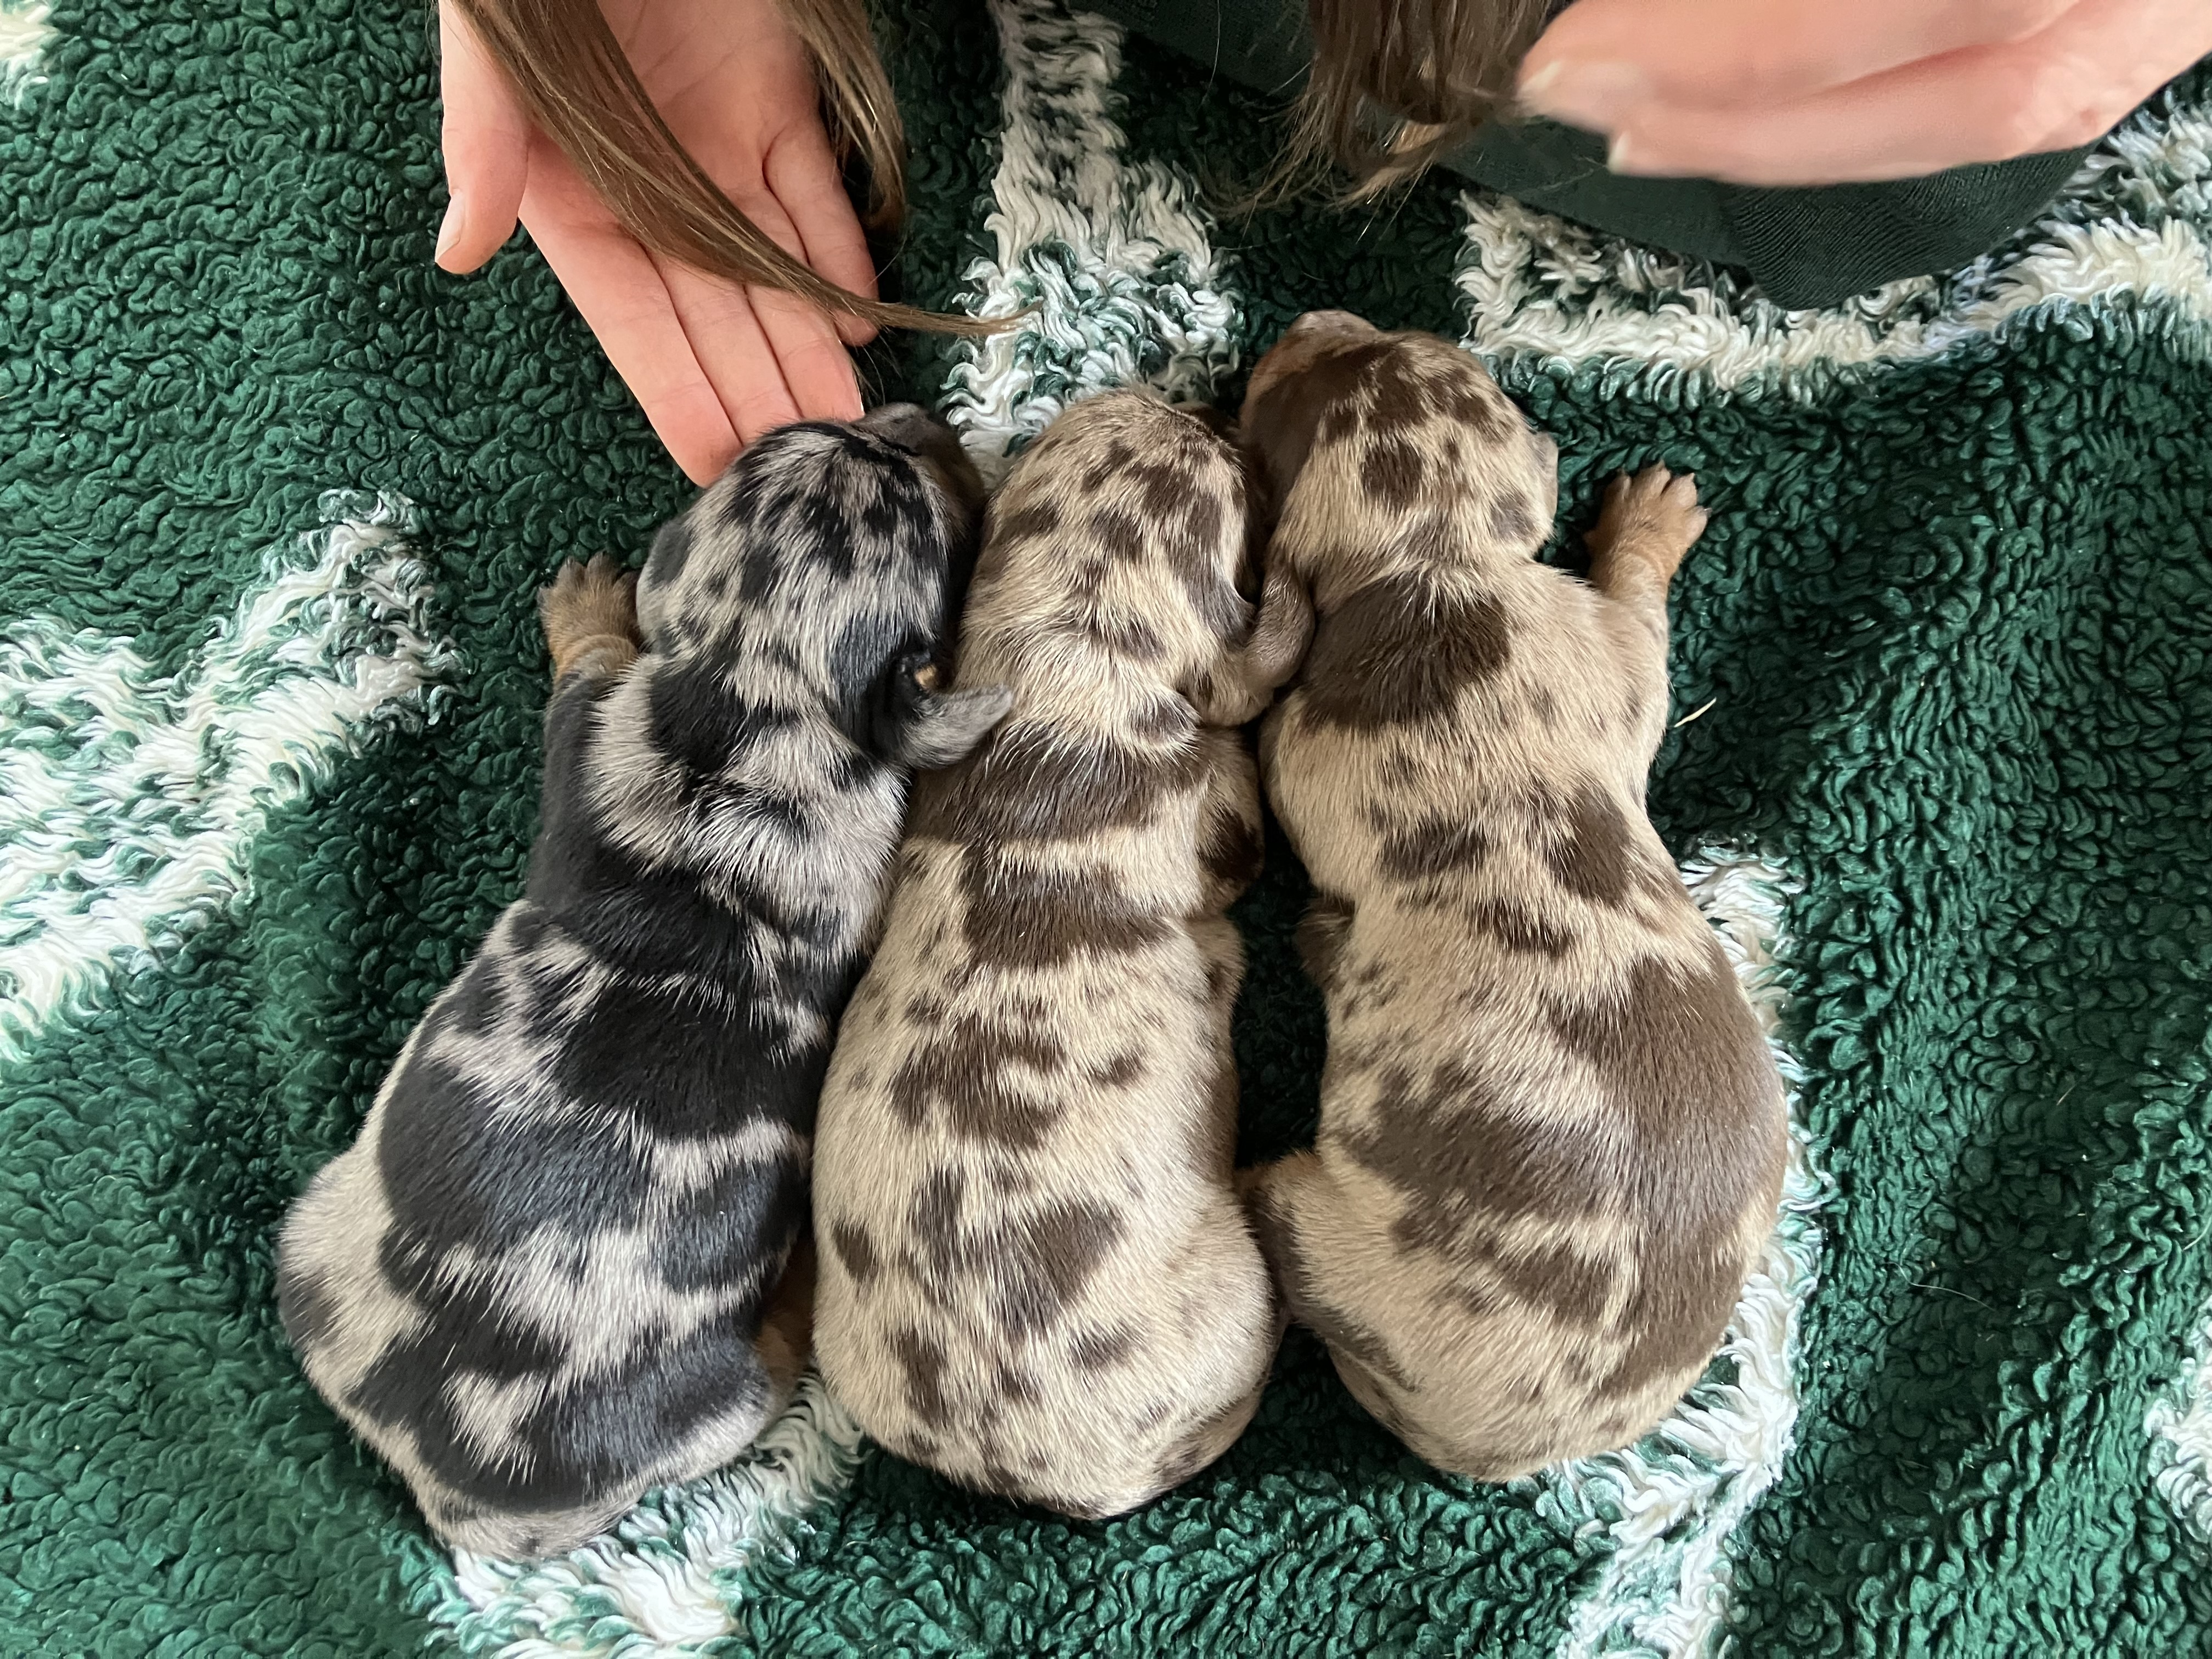 Puppies 1 week old 